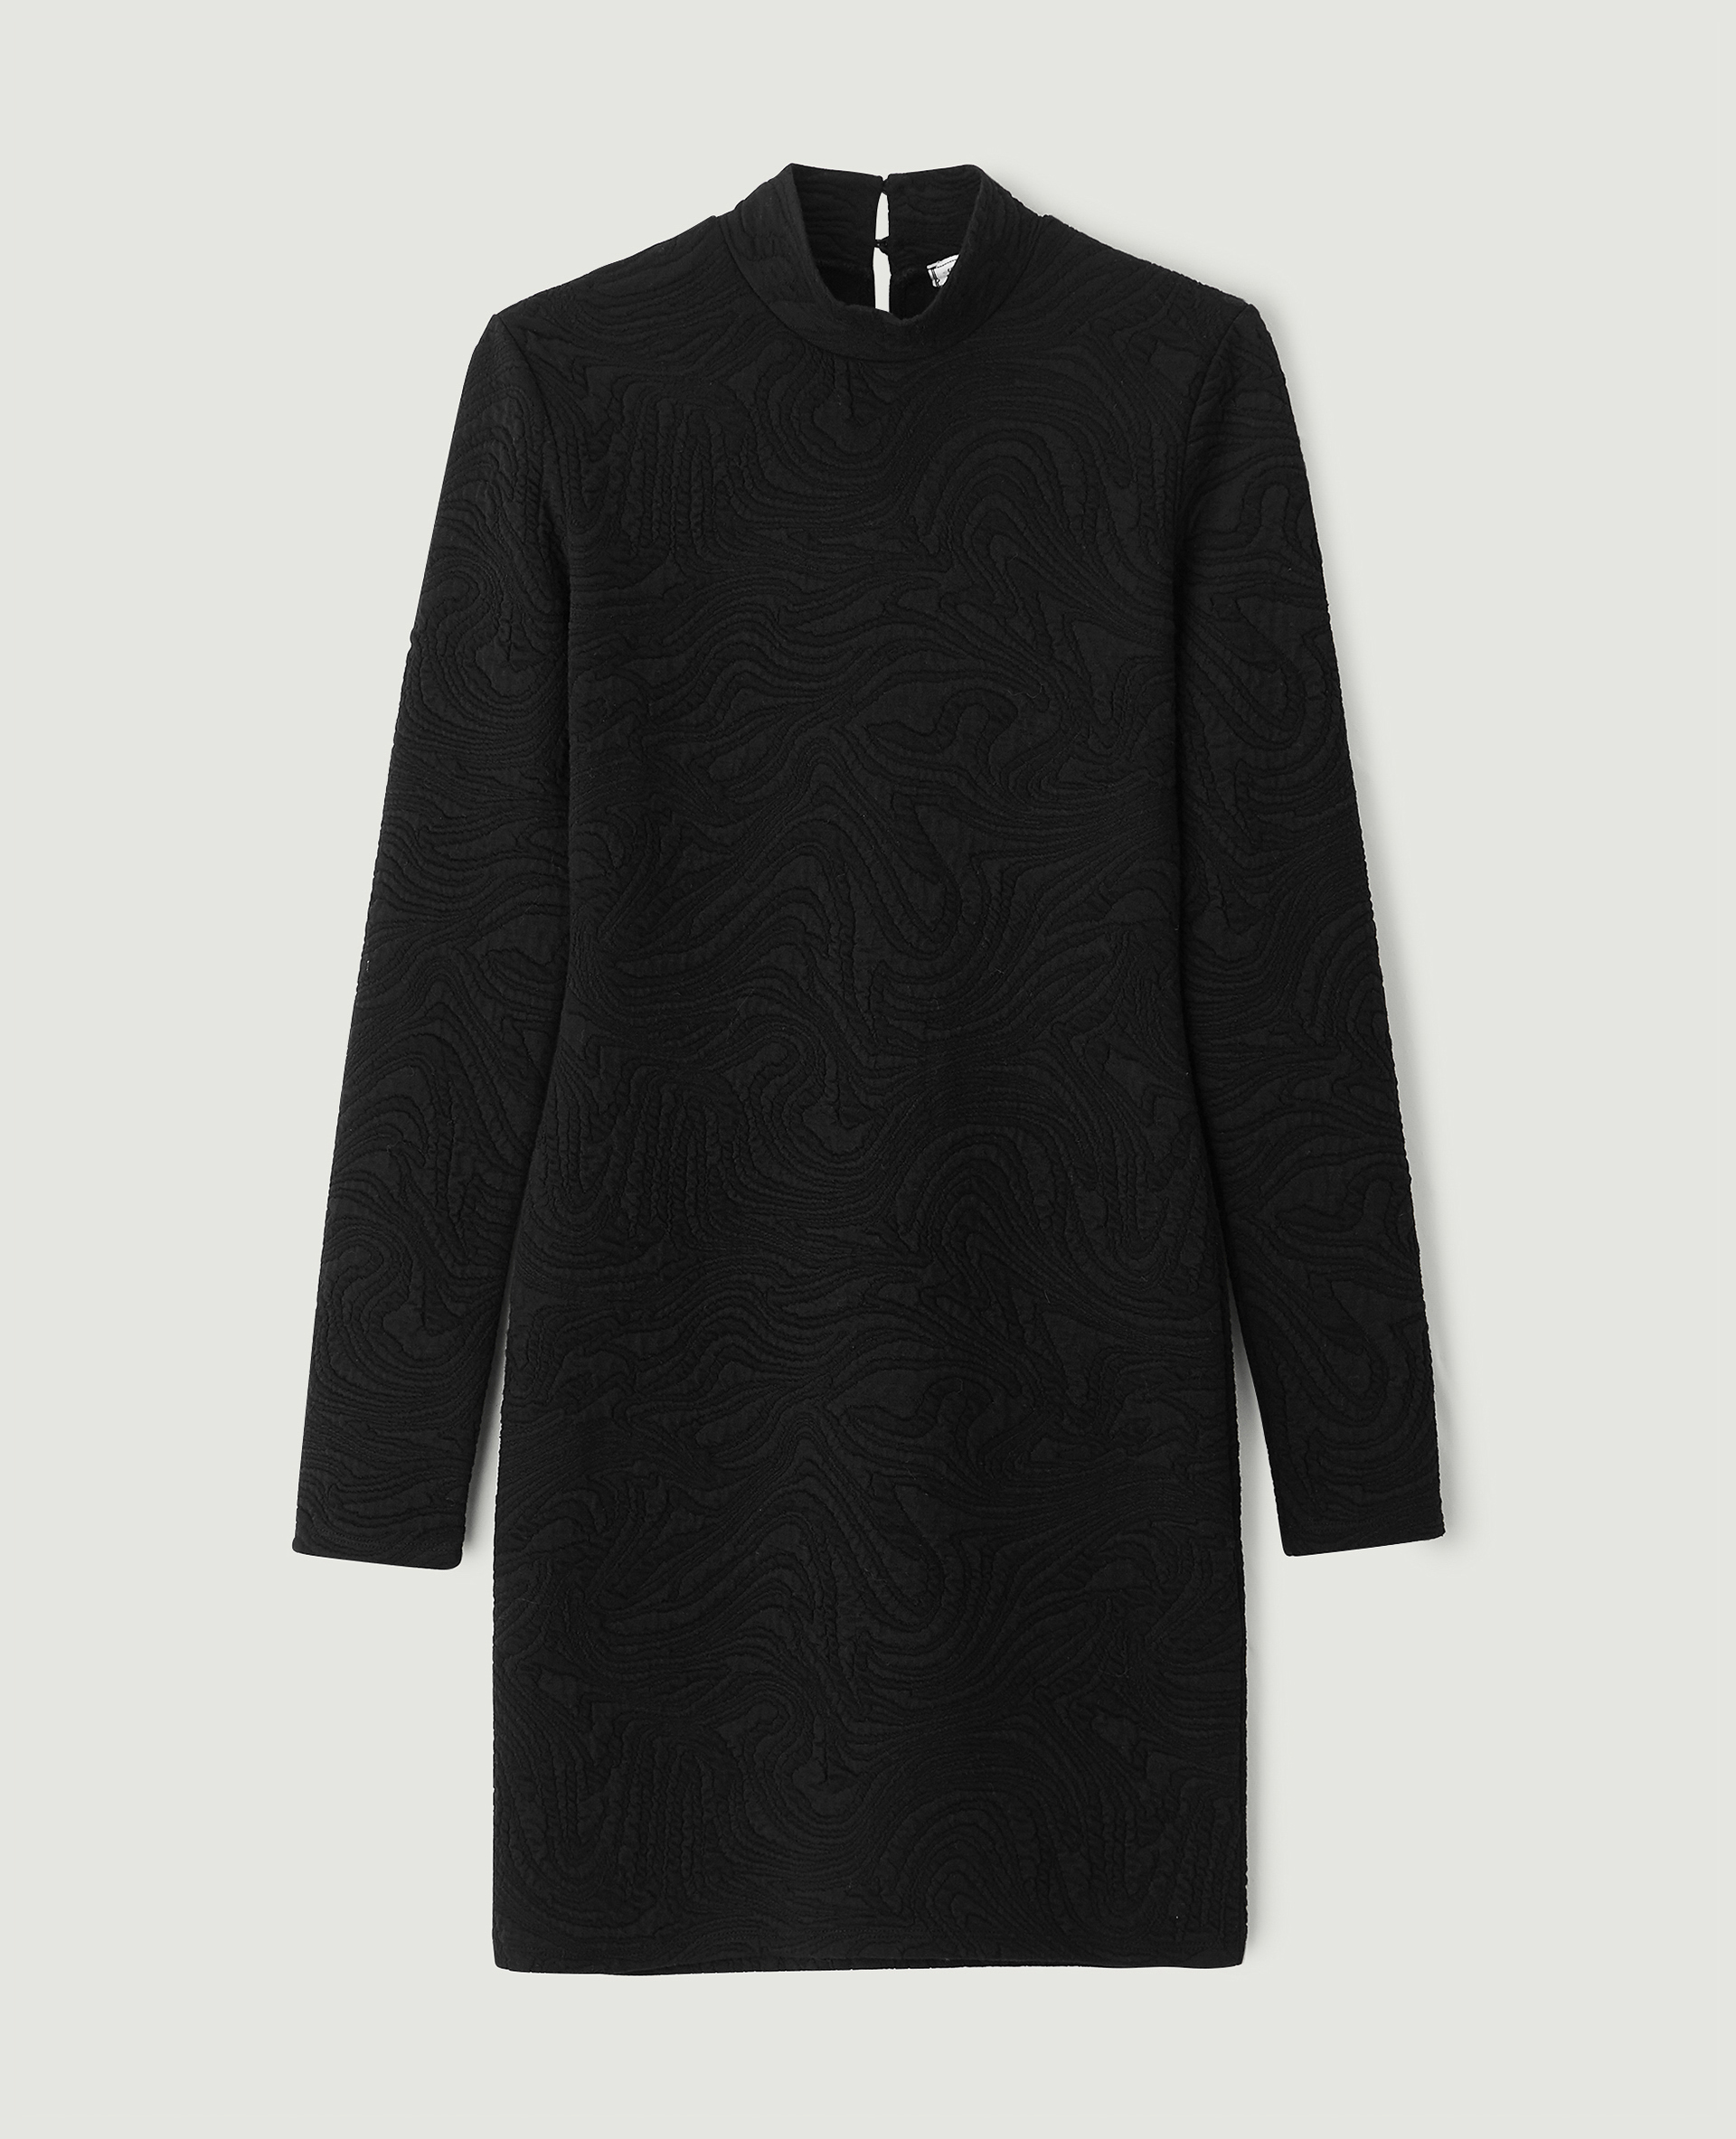 Robe courte matière jacquard noir - Pimkie